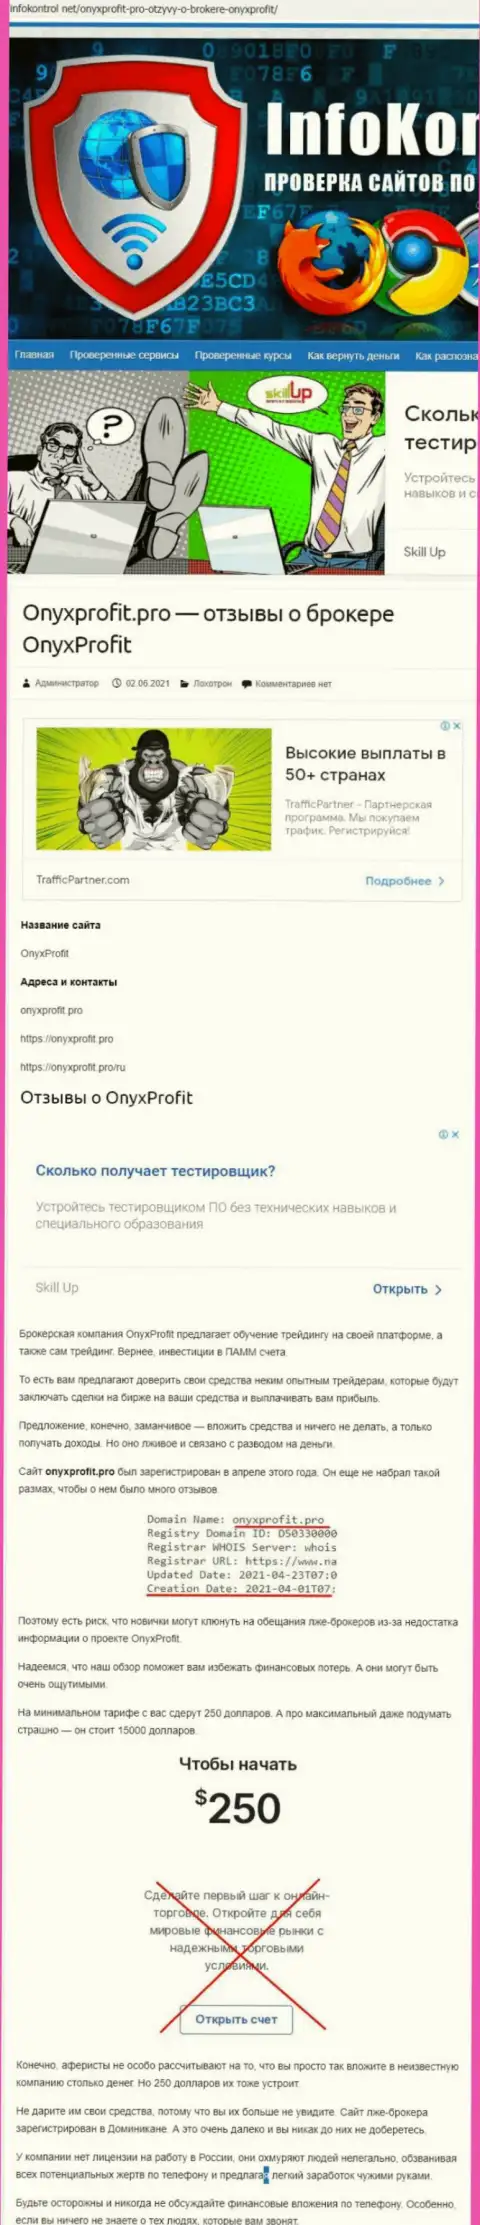 OnyxProfit это очередной развод, вестись на который не рекомендуем (обзор противозаконных деяний компании)